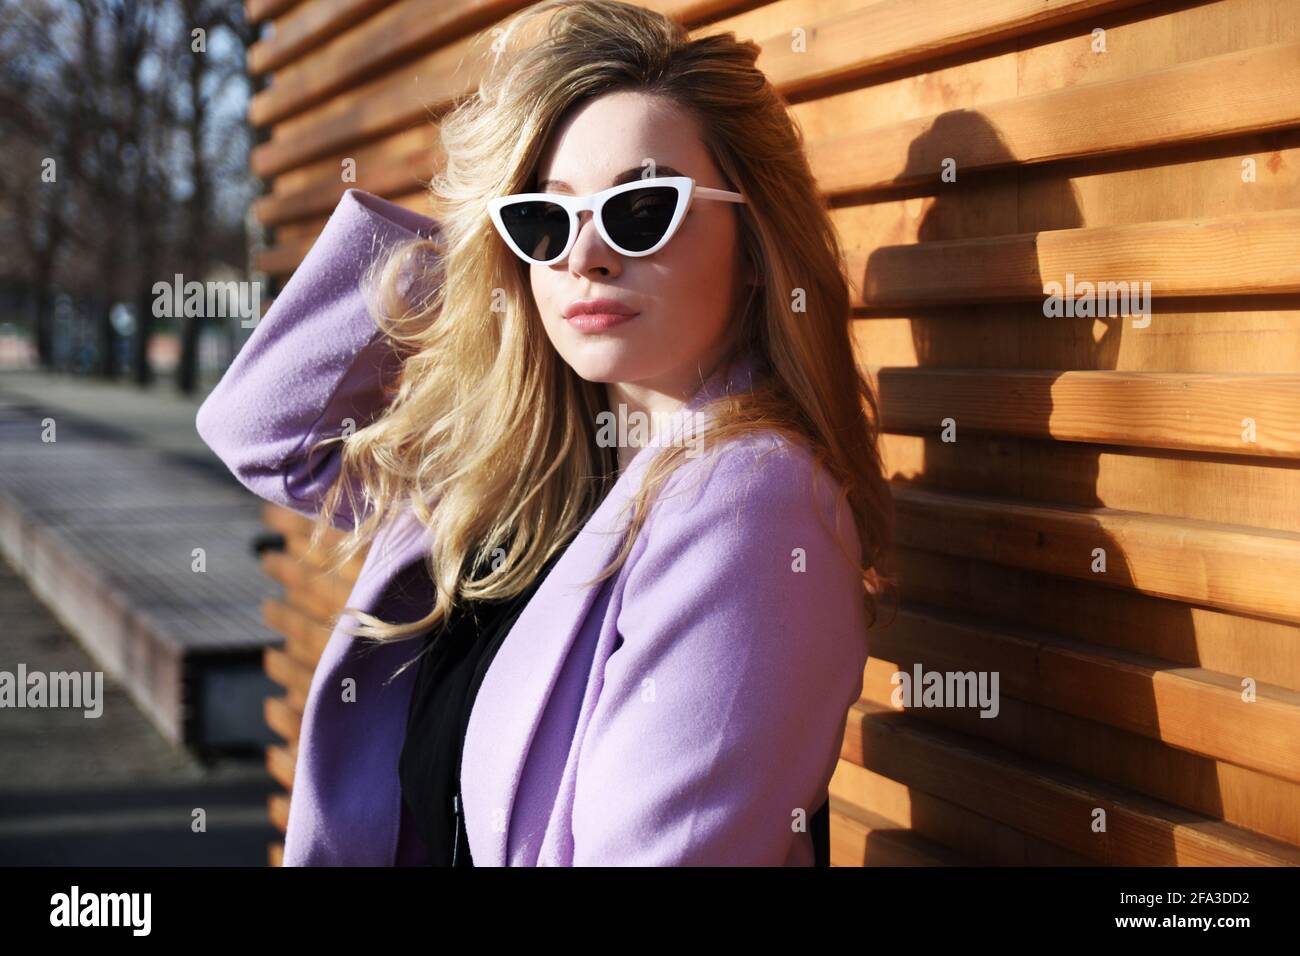 Junge Frau in Breslau. Studentin mit blonden Haaren, violettem Mantel und Sonnenbrille. Stockfoto